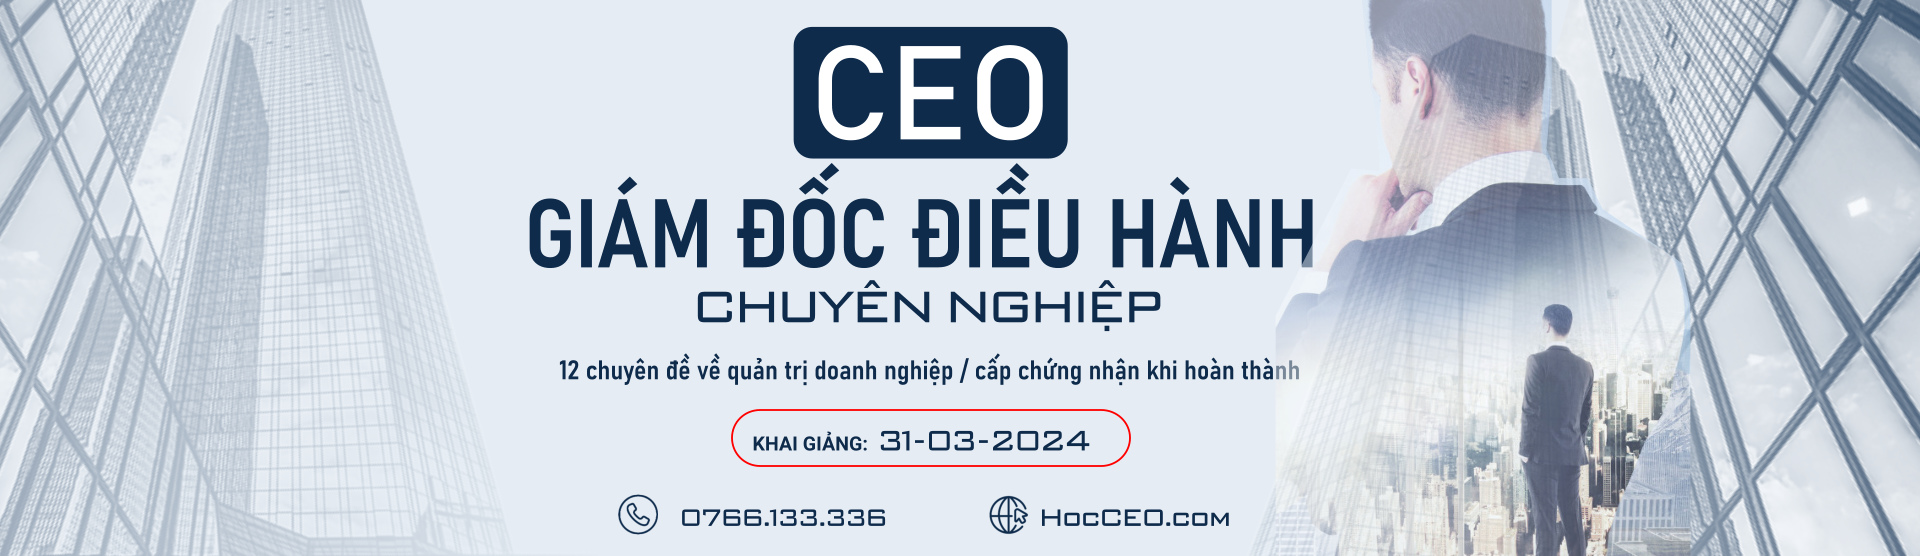 CEO Giám đốc điều hành HCM